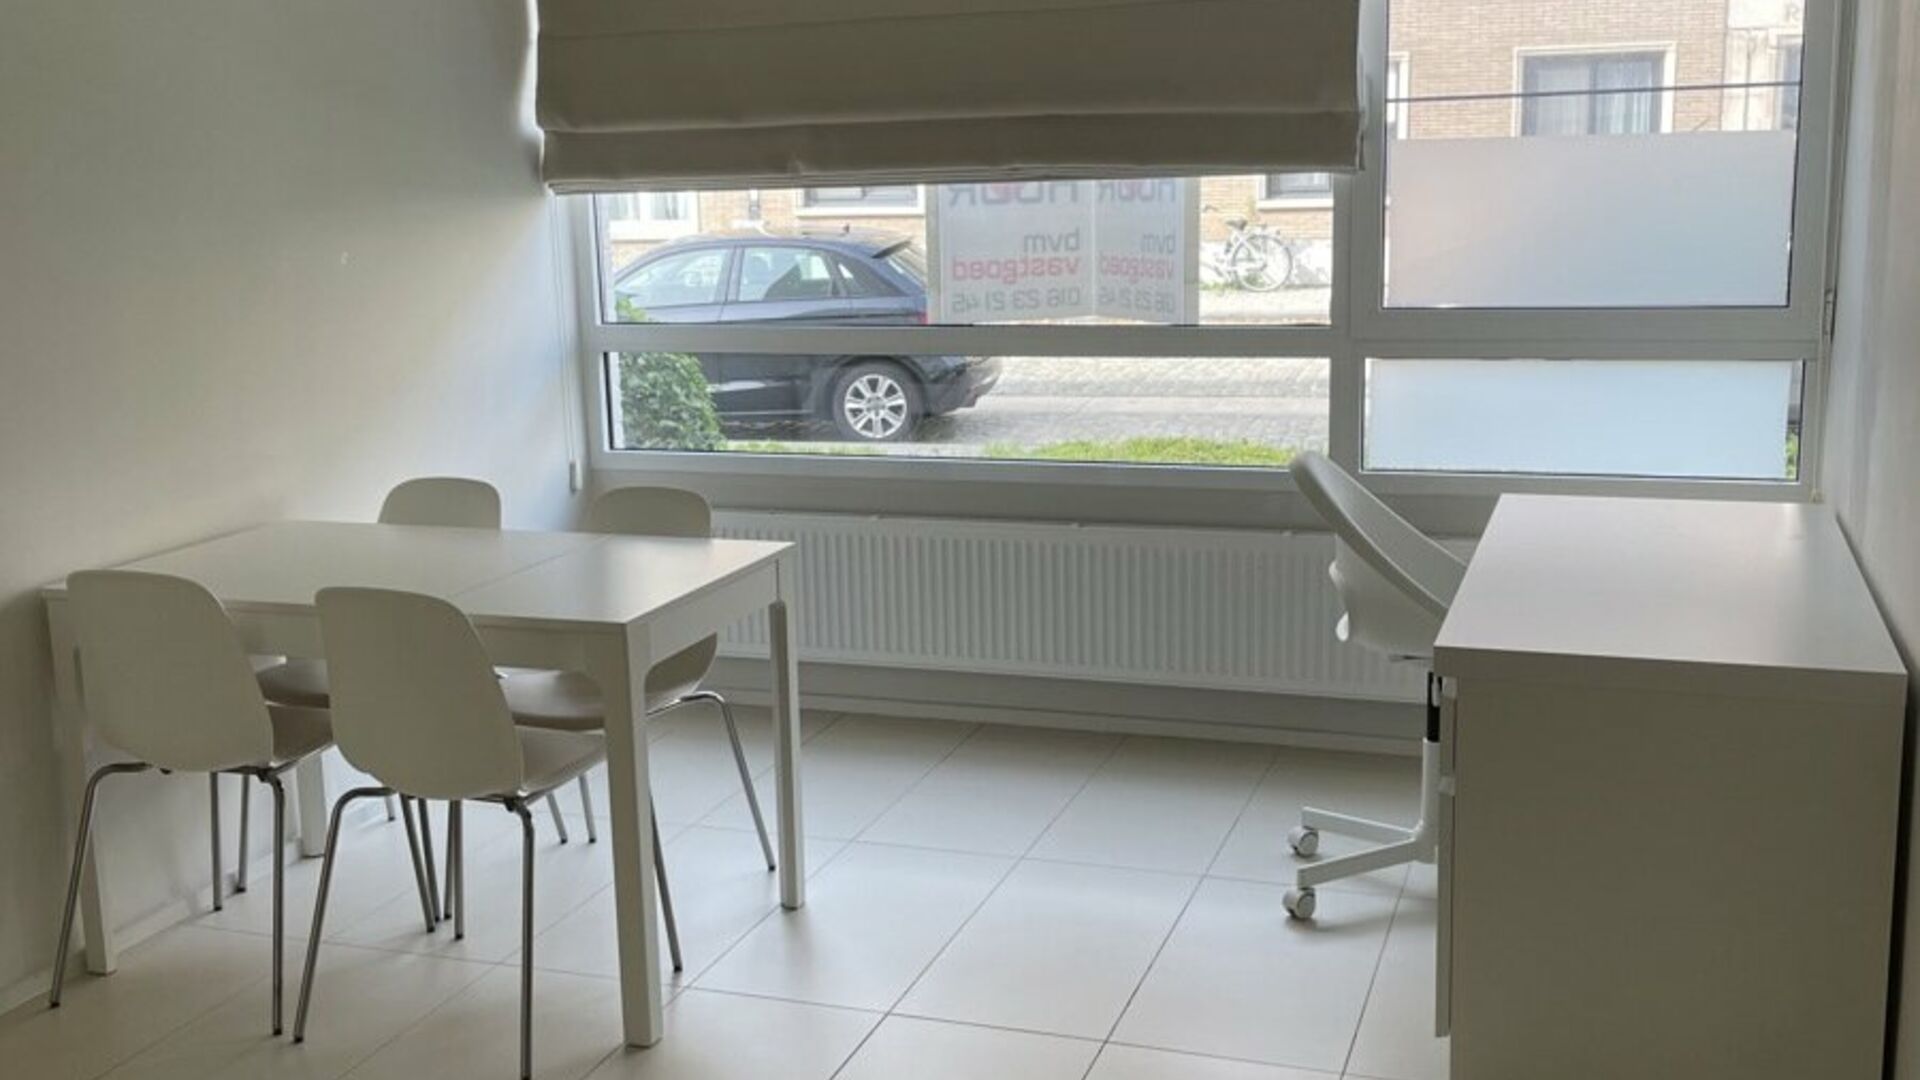 Welkom in deze ruime studentenstudio gelegen in hartje Leuven! 
Deze ruime studio beschikt over een geïnstalleerde kitchenette, eigen sanitair en een aparte slaapruimte.
Dankzij de grote raampartijen kan u tevens genieten van aangenaam natuurlijk daglich